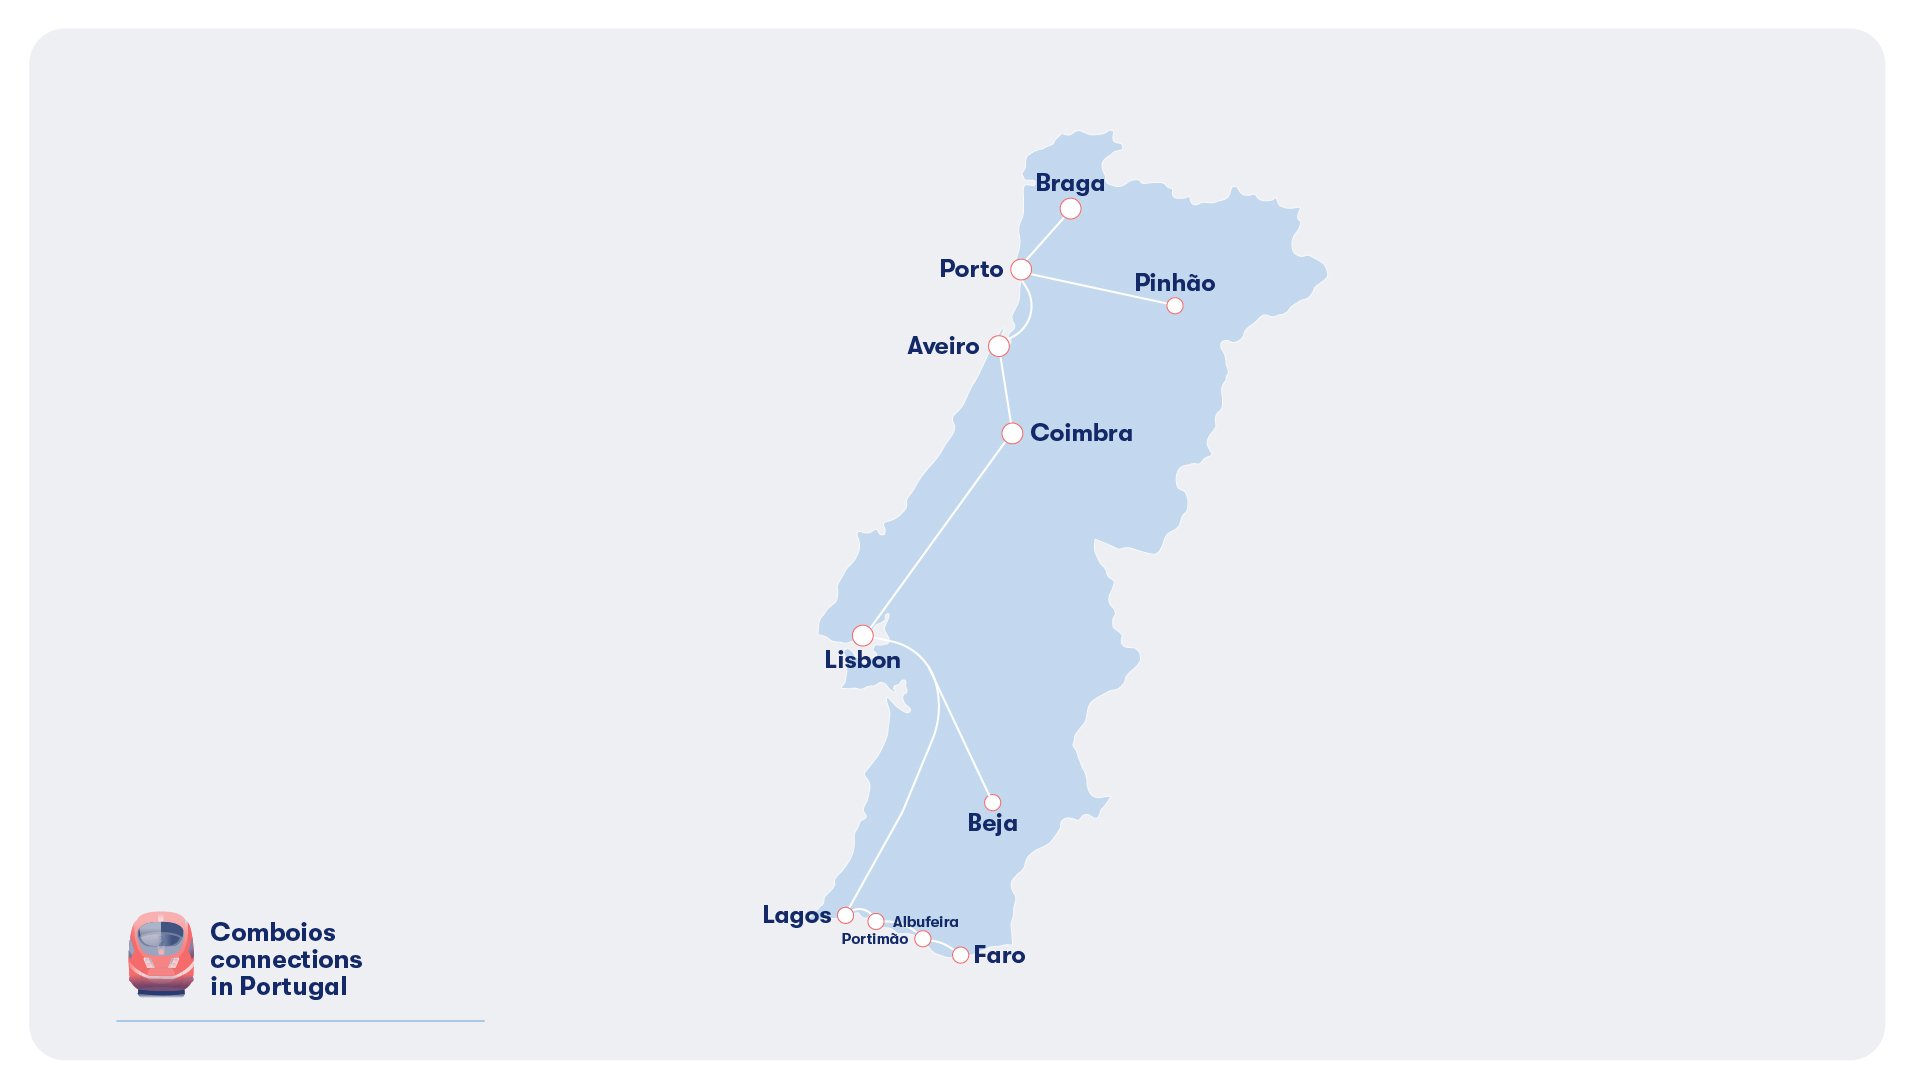 Comboios de Portugal train routes map